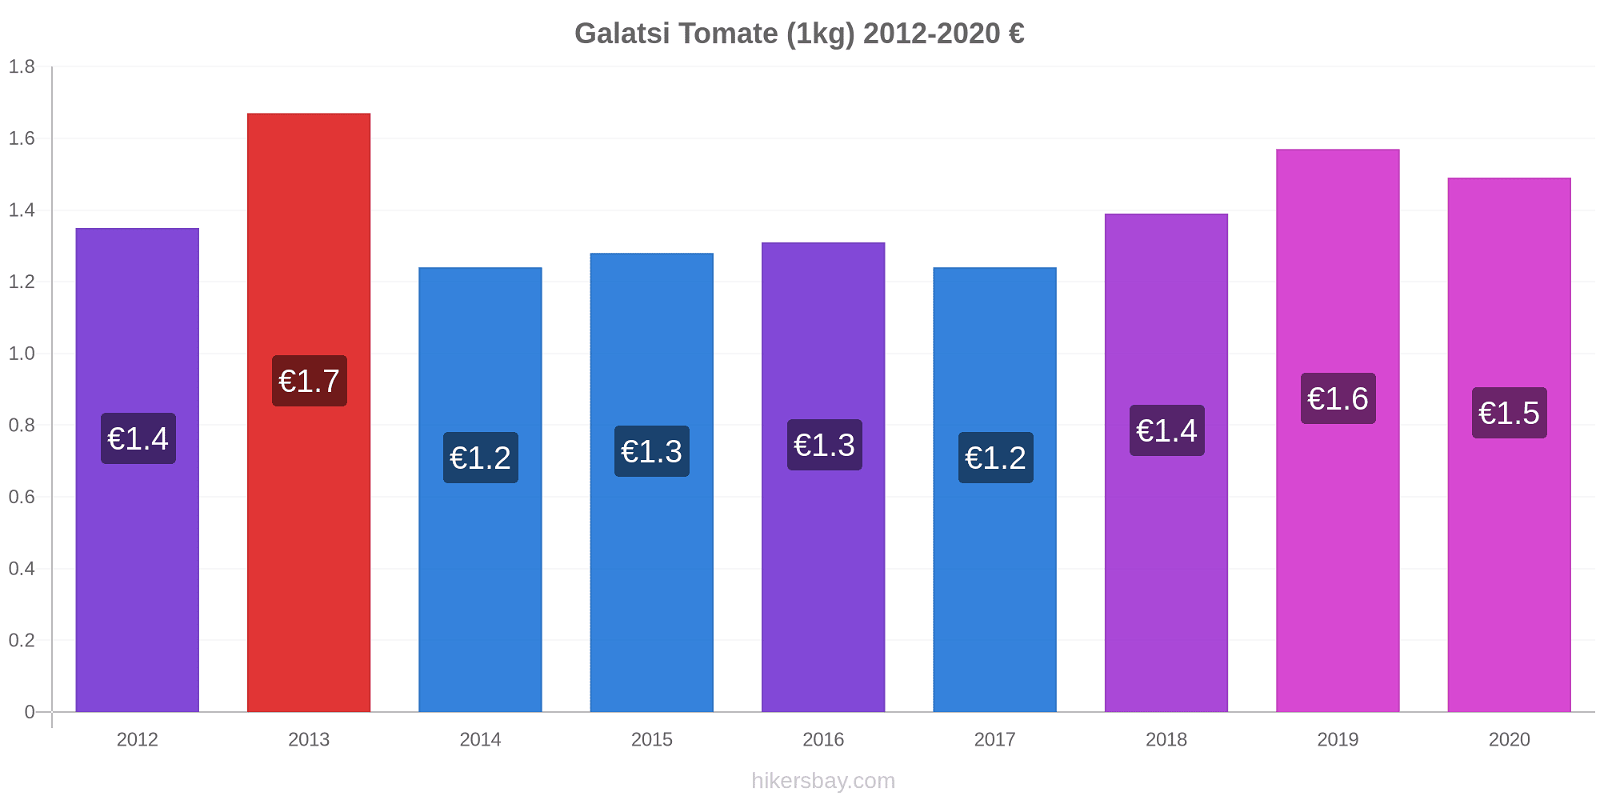 Galatsi cambios de precios Tomate (1kg) hikersbay.com